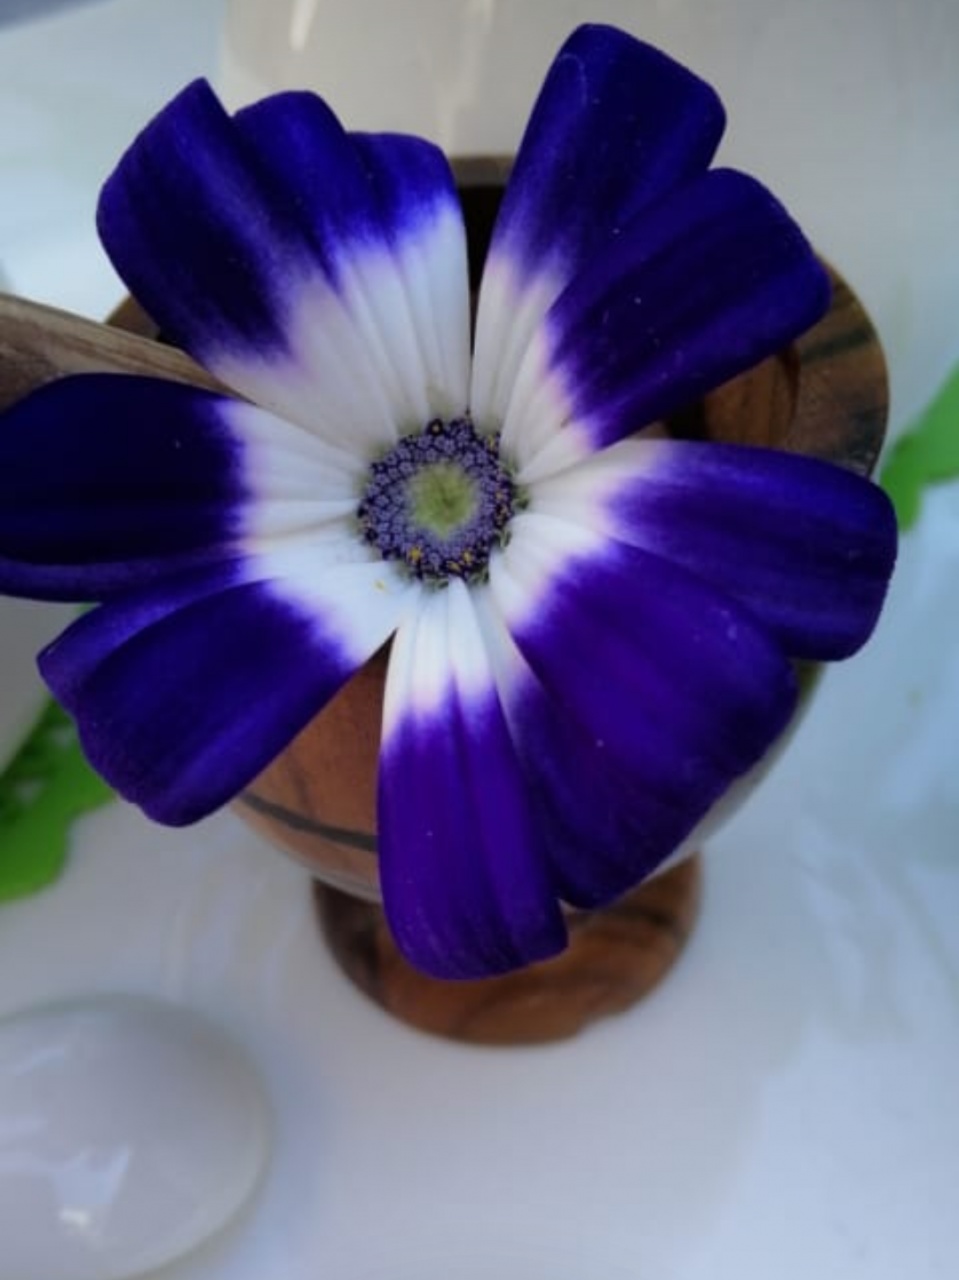 My lovely flower😊 私の素敵な花